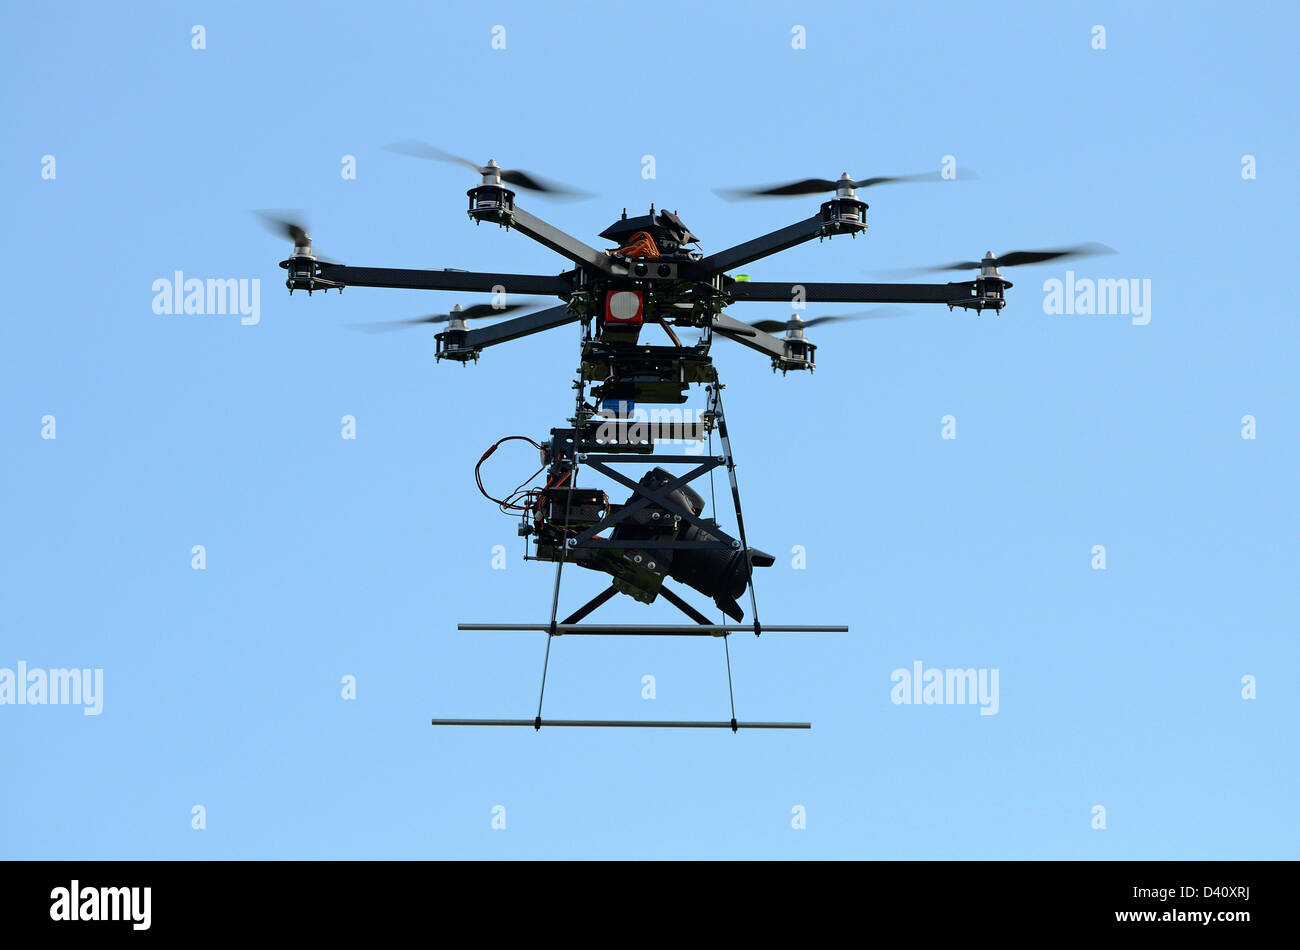 Drone im Flug und Digitalkamera auf einem fliegenden Unmanned Aerial Vehicle (UAV), mit sechs Rotoren, verwendet Luftaufnahmen oder filmen hautnah Stockfoto